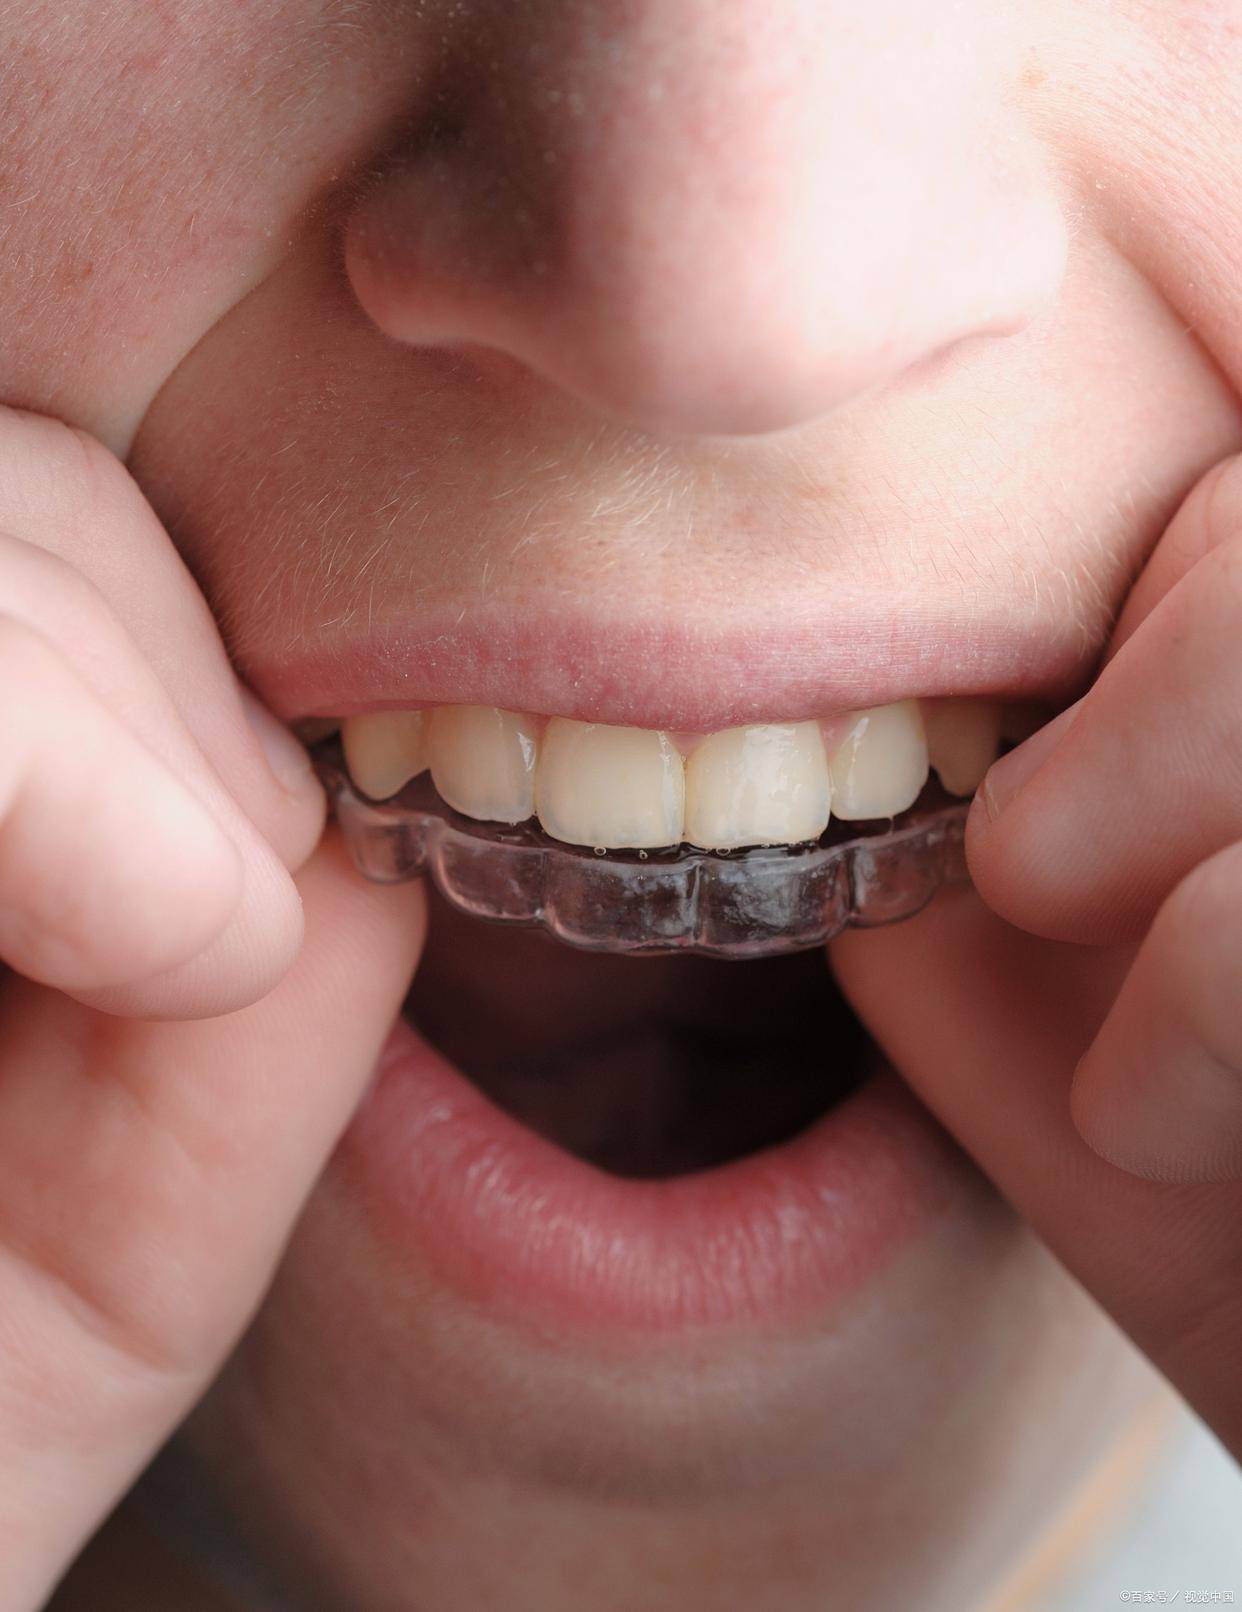 两岁半幼童竟每天戴 12 小时牙套,儿童牙齿矫正乱象何时休